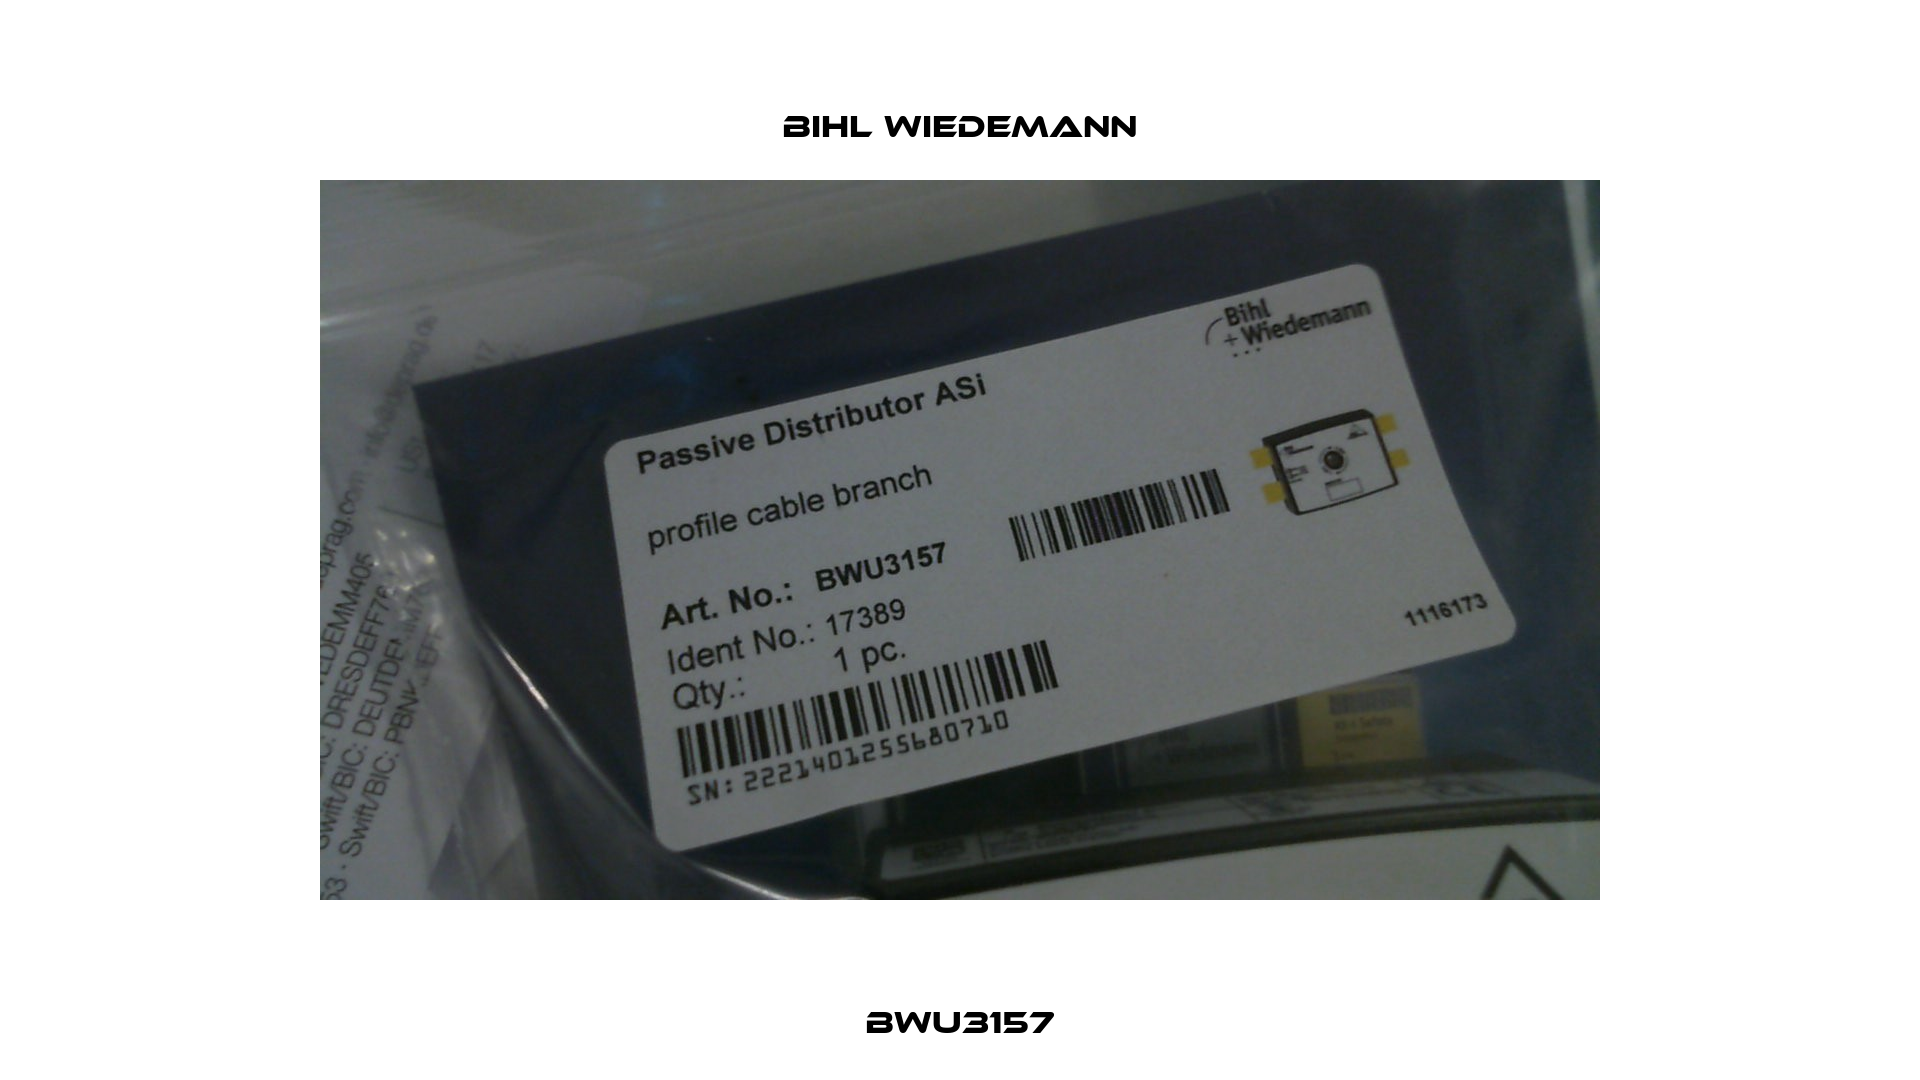 BWU3157 Bihl Wiedemann